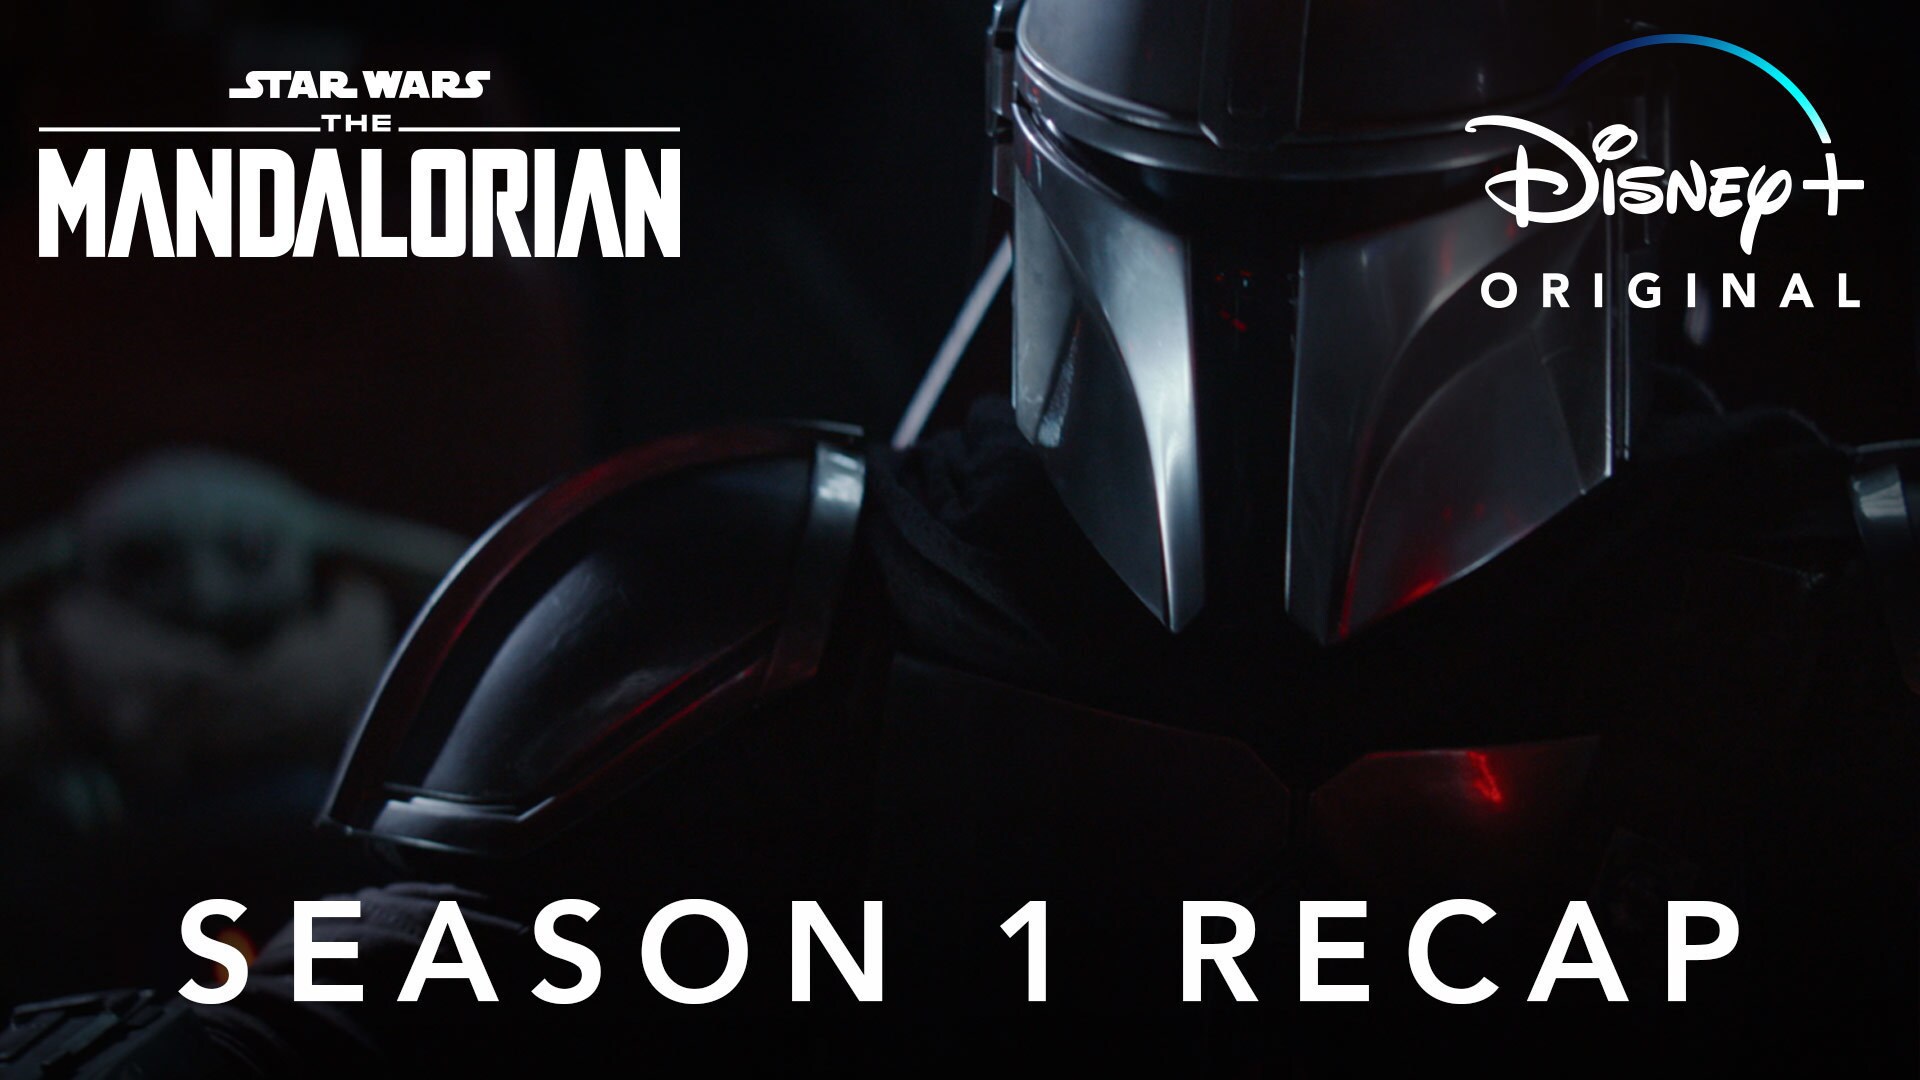 Season 1 Recap - The Mandalorian